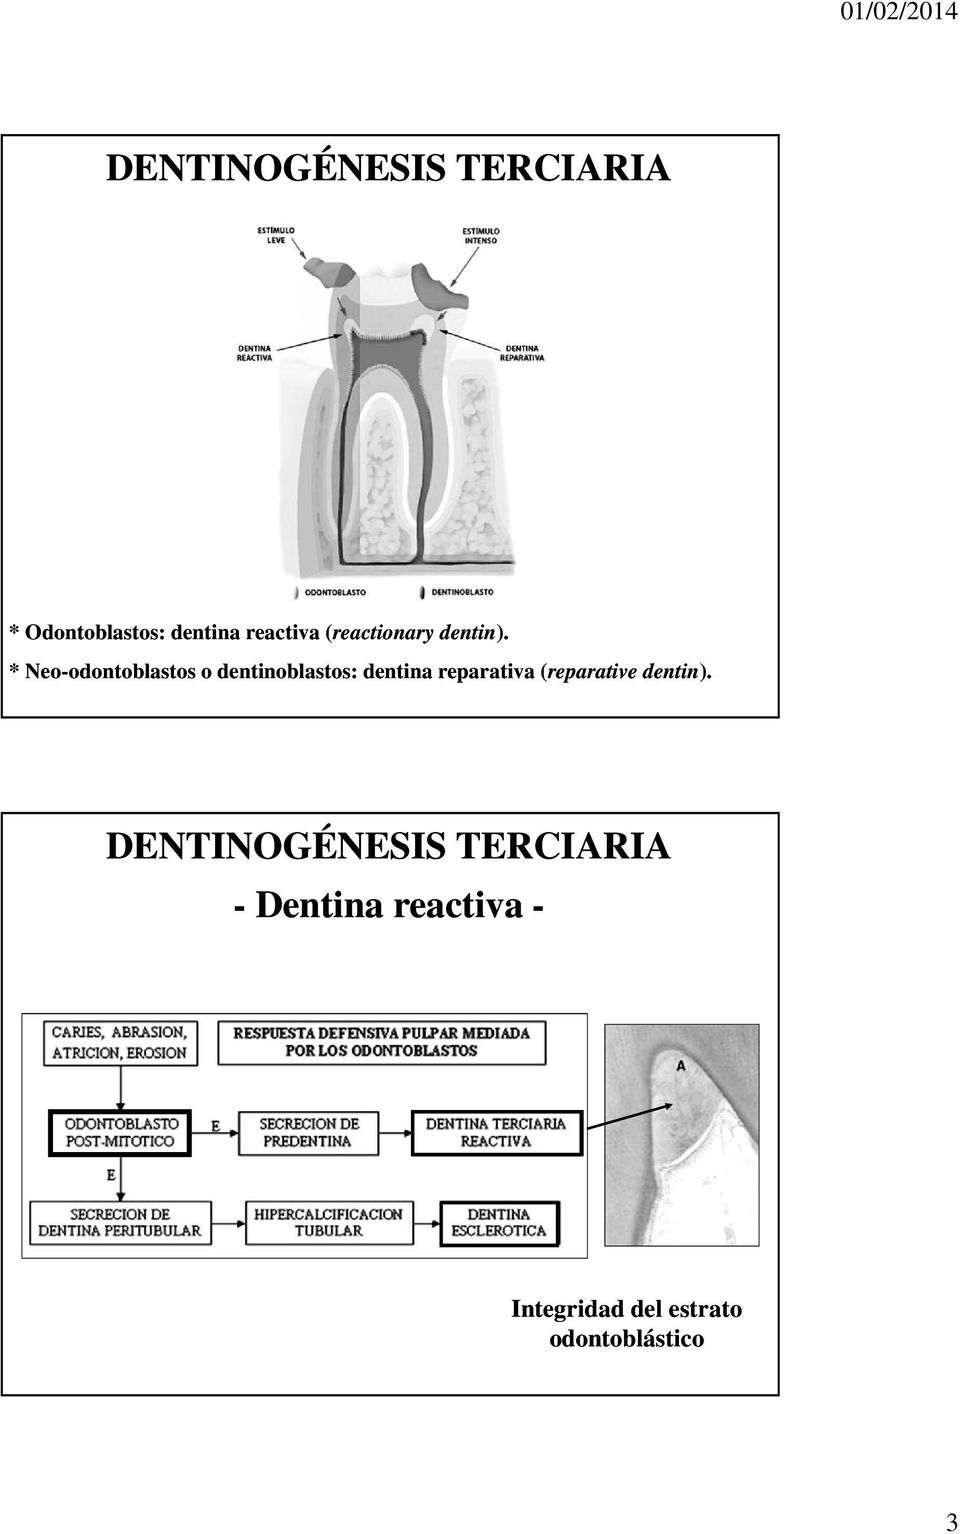 * Neo-odontoblastos o dentinoblastos: dentina reparativa